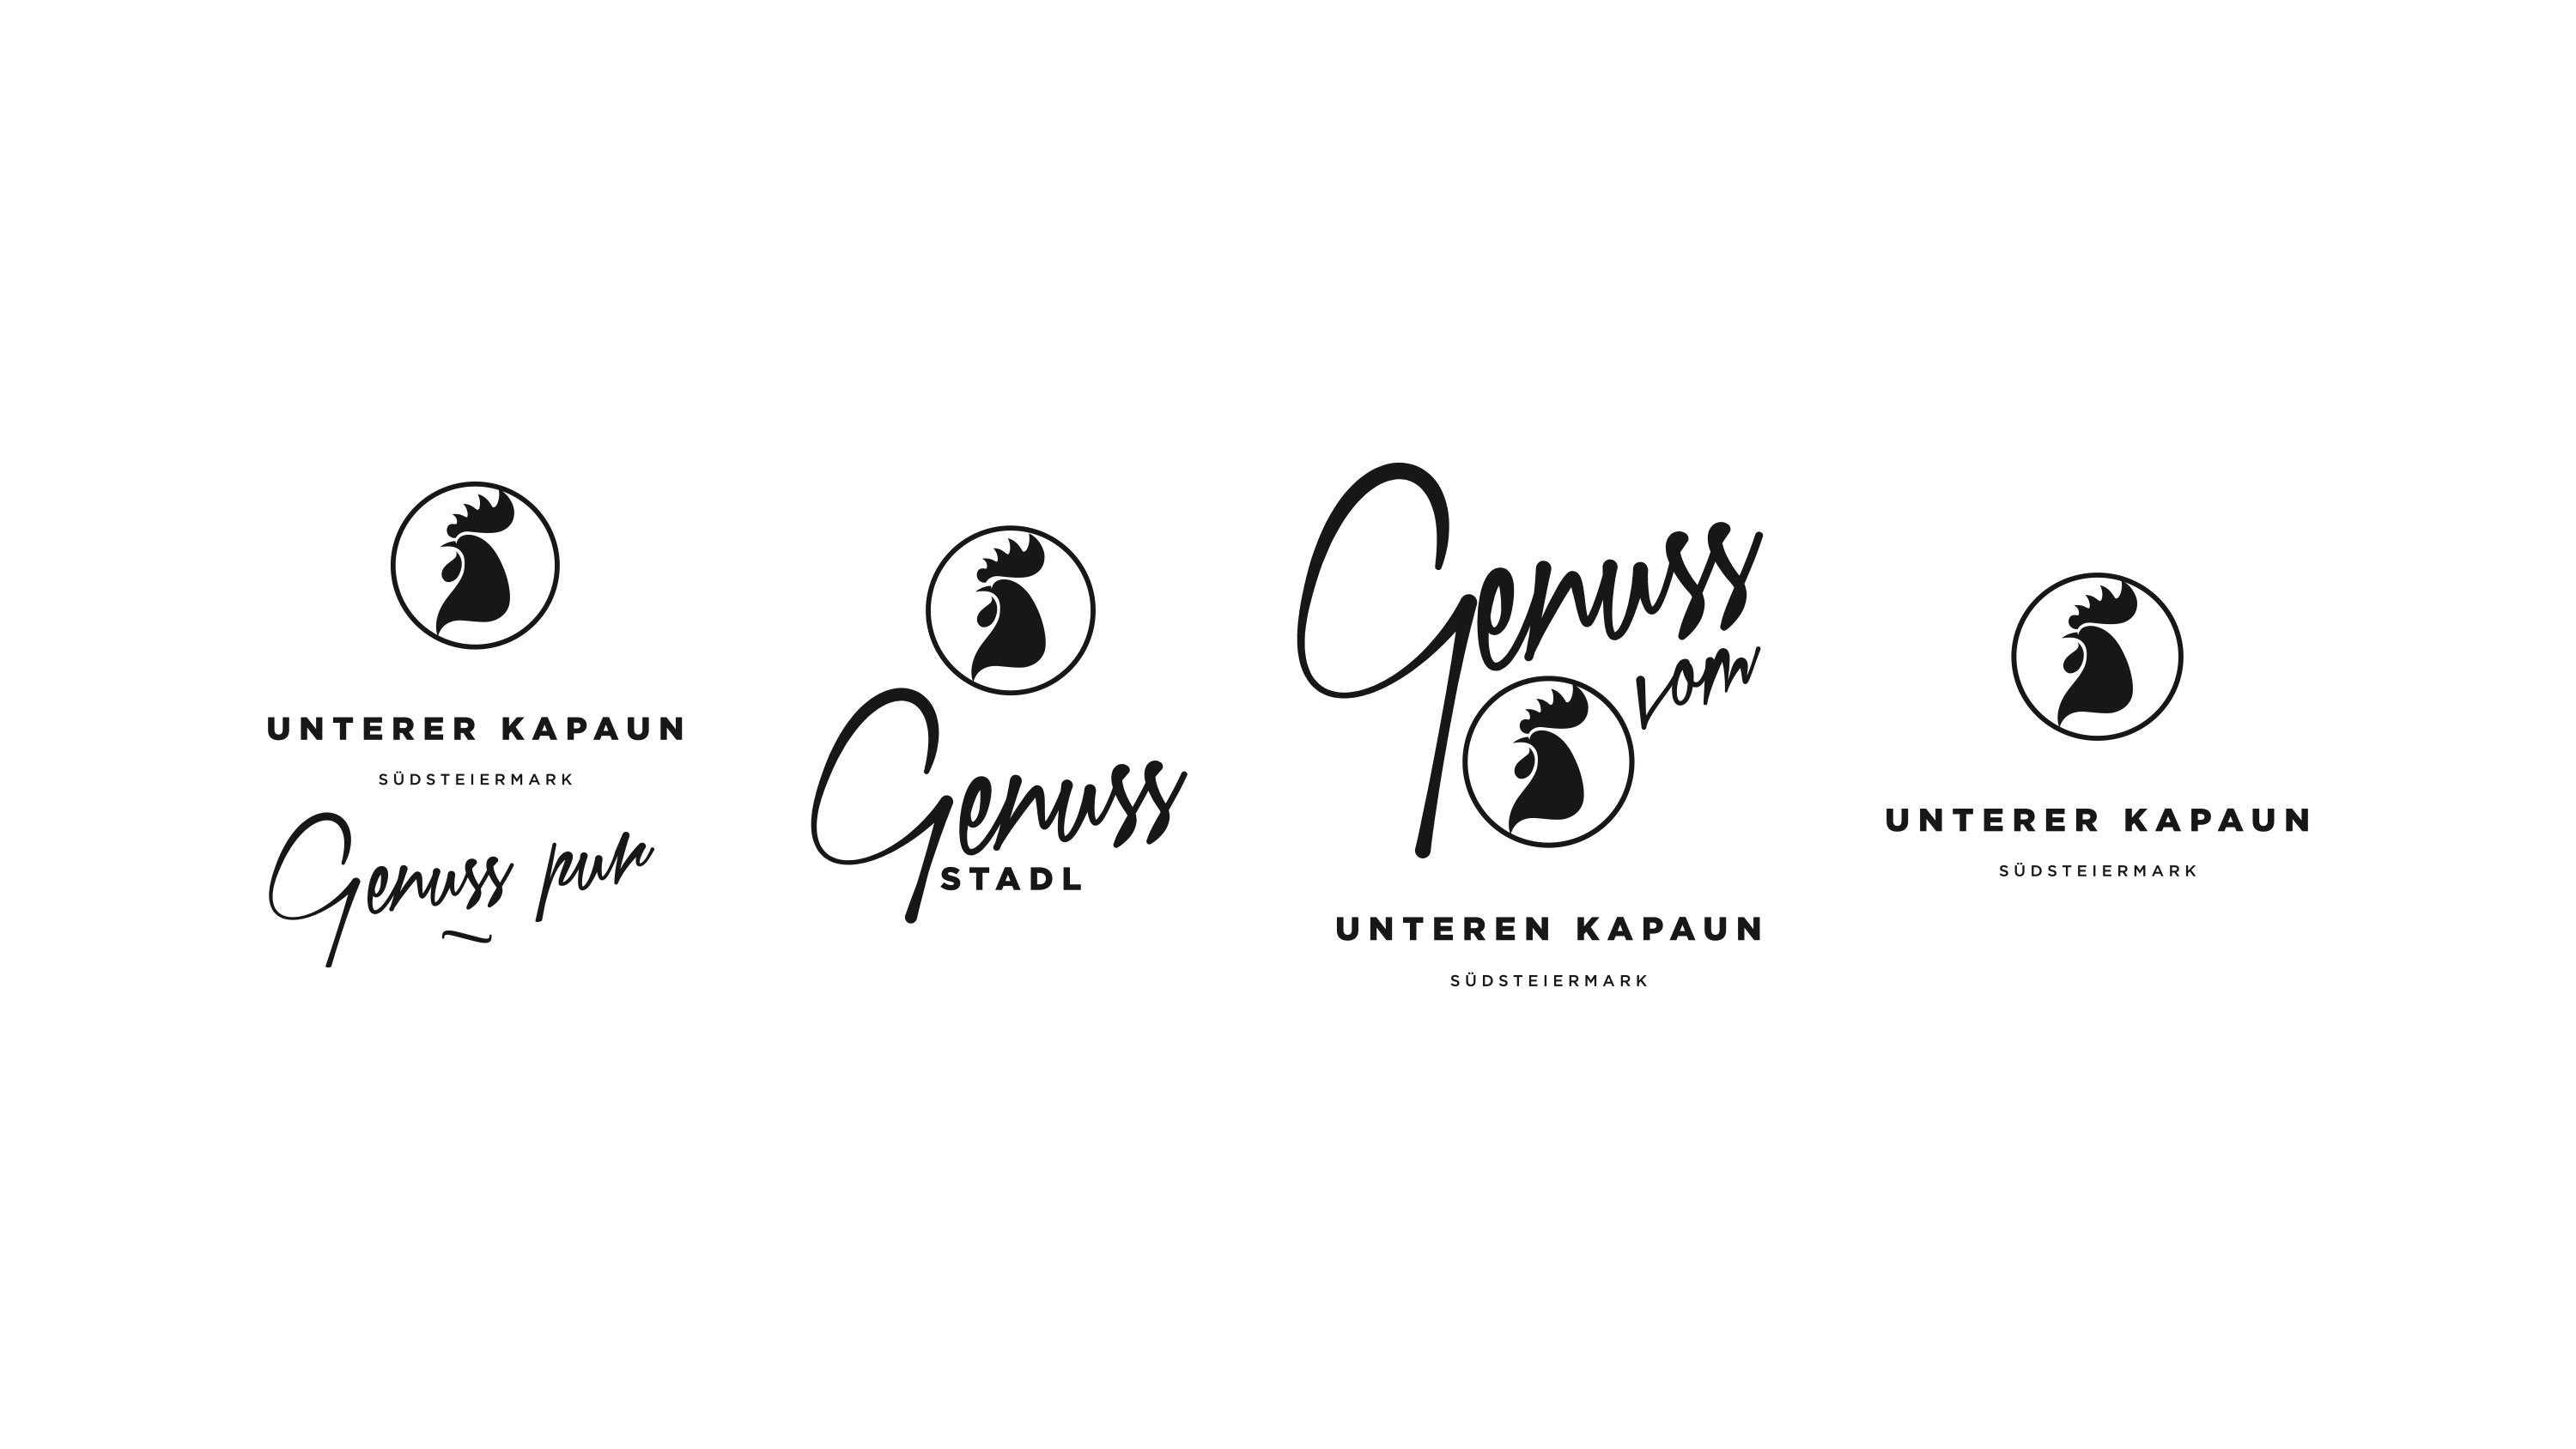 Weingut Unterer Kapaun Genussstadl Logos